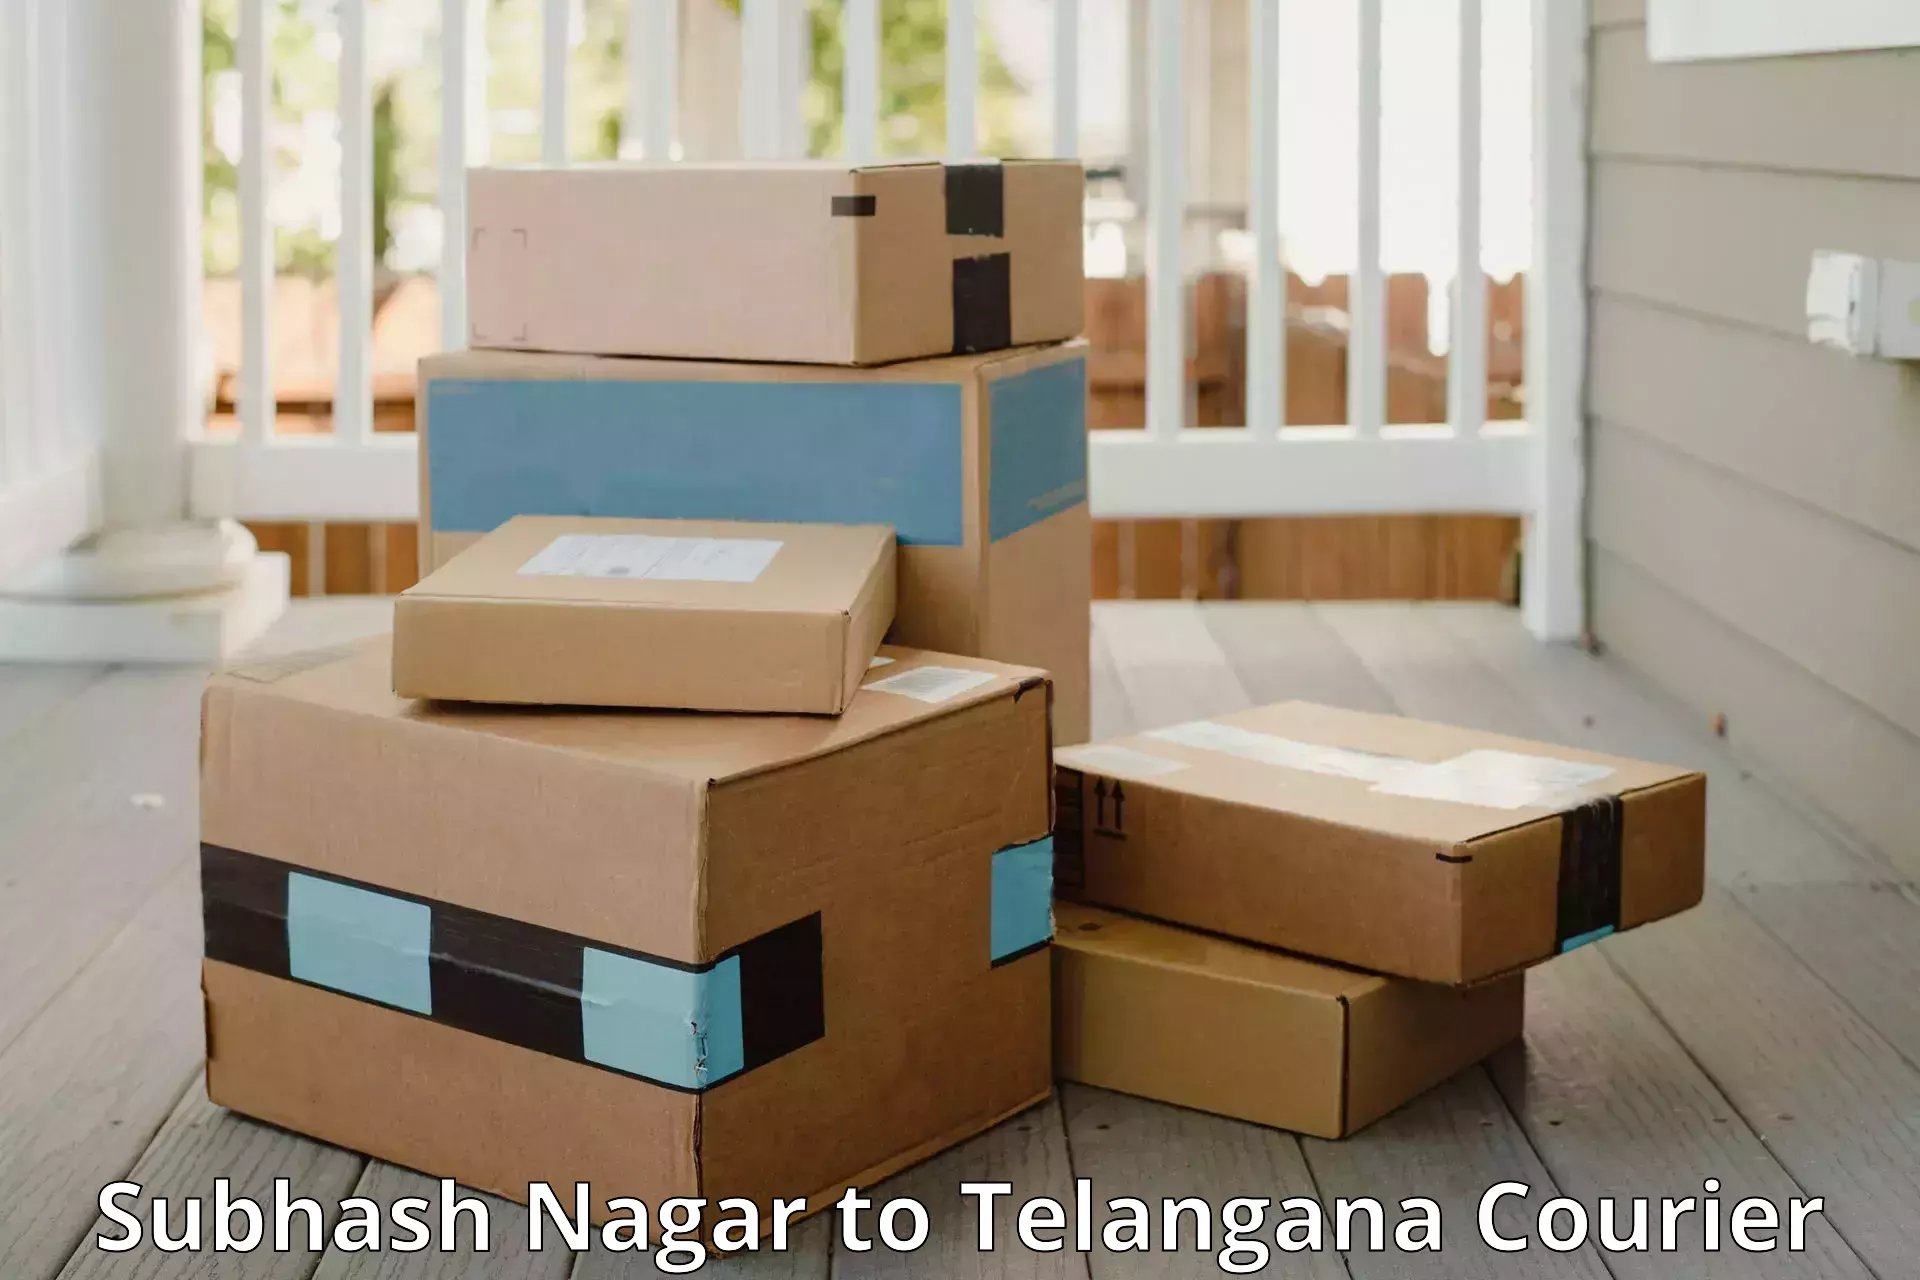 Luggage shipment specialists Subhash Nagar to Nakerakal